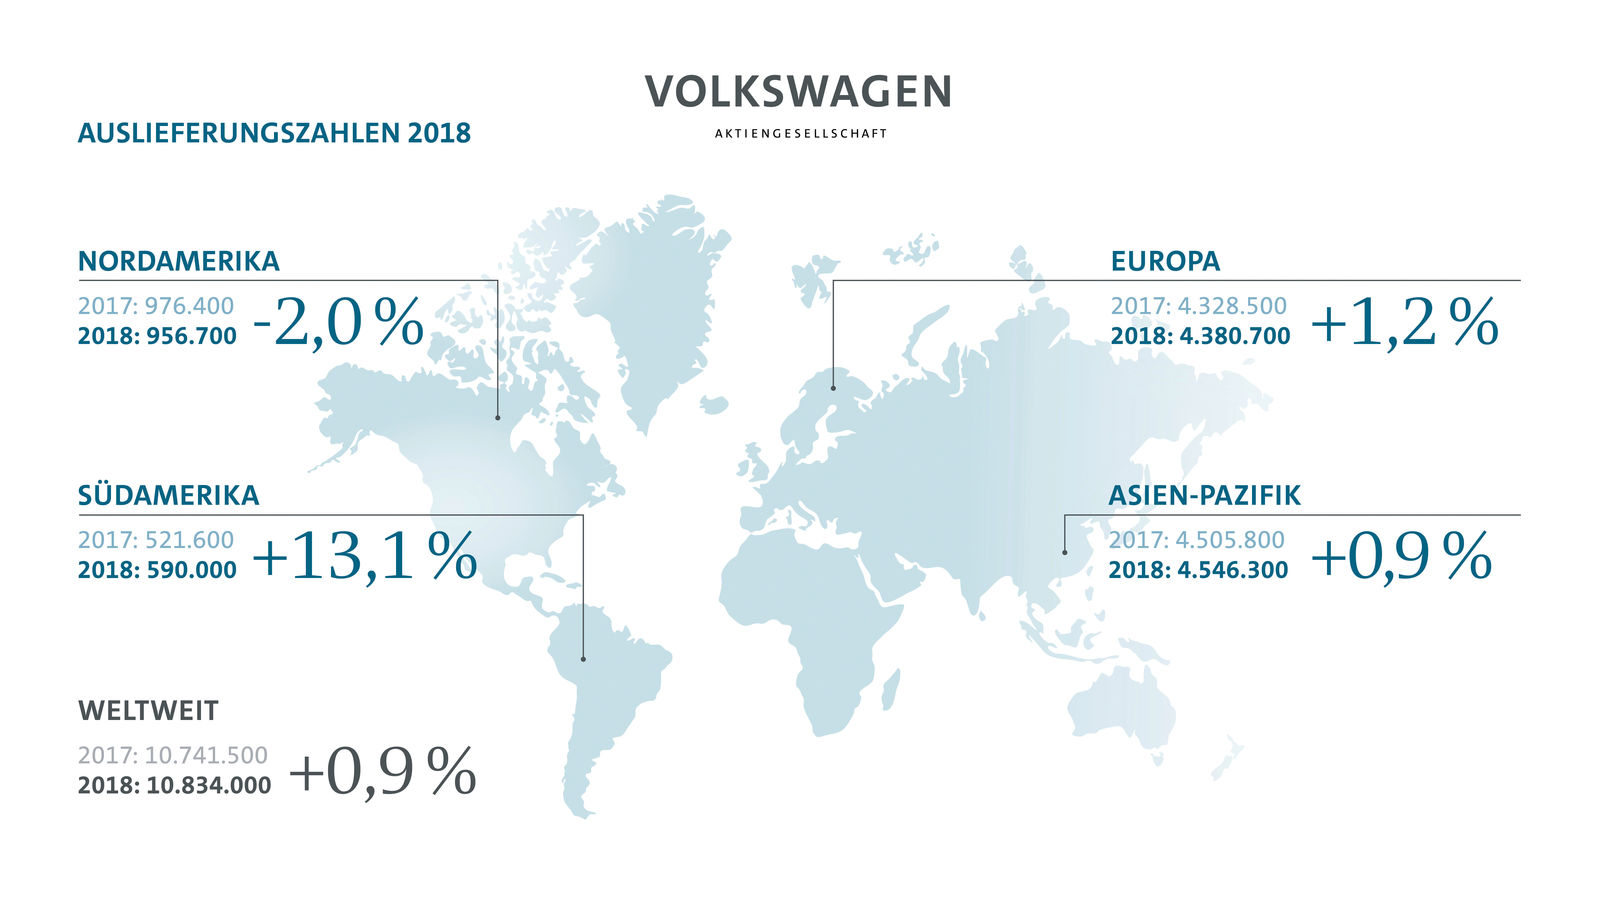 Auslieferungsrekord für Volkswagen Konzern in 2018